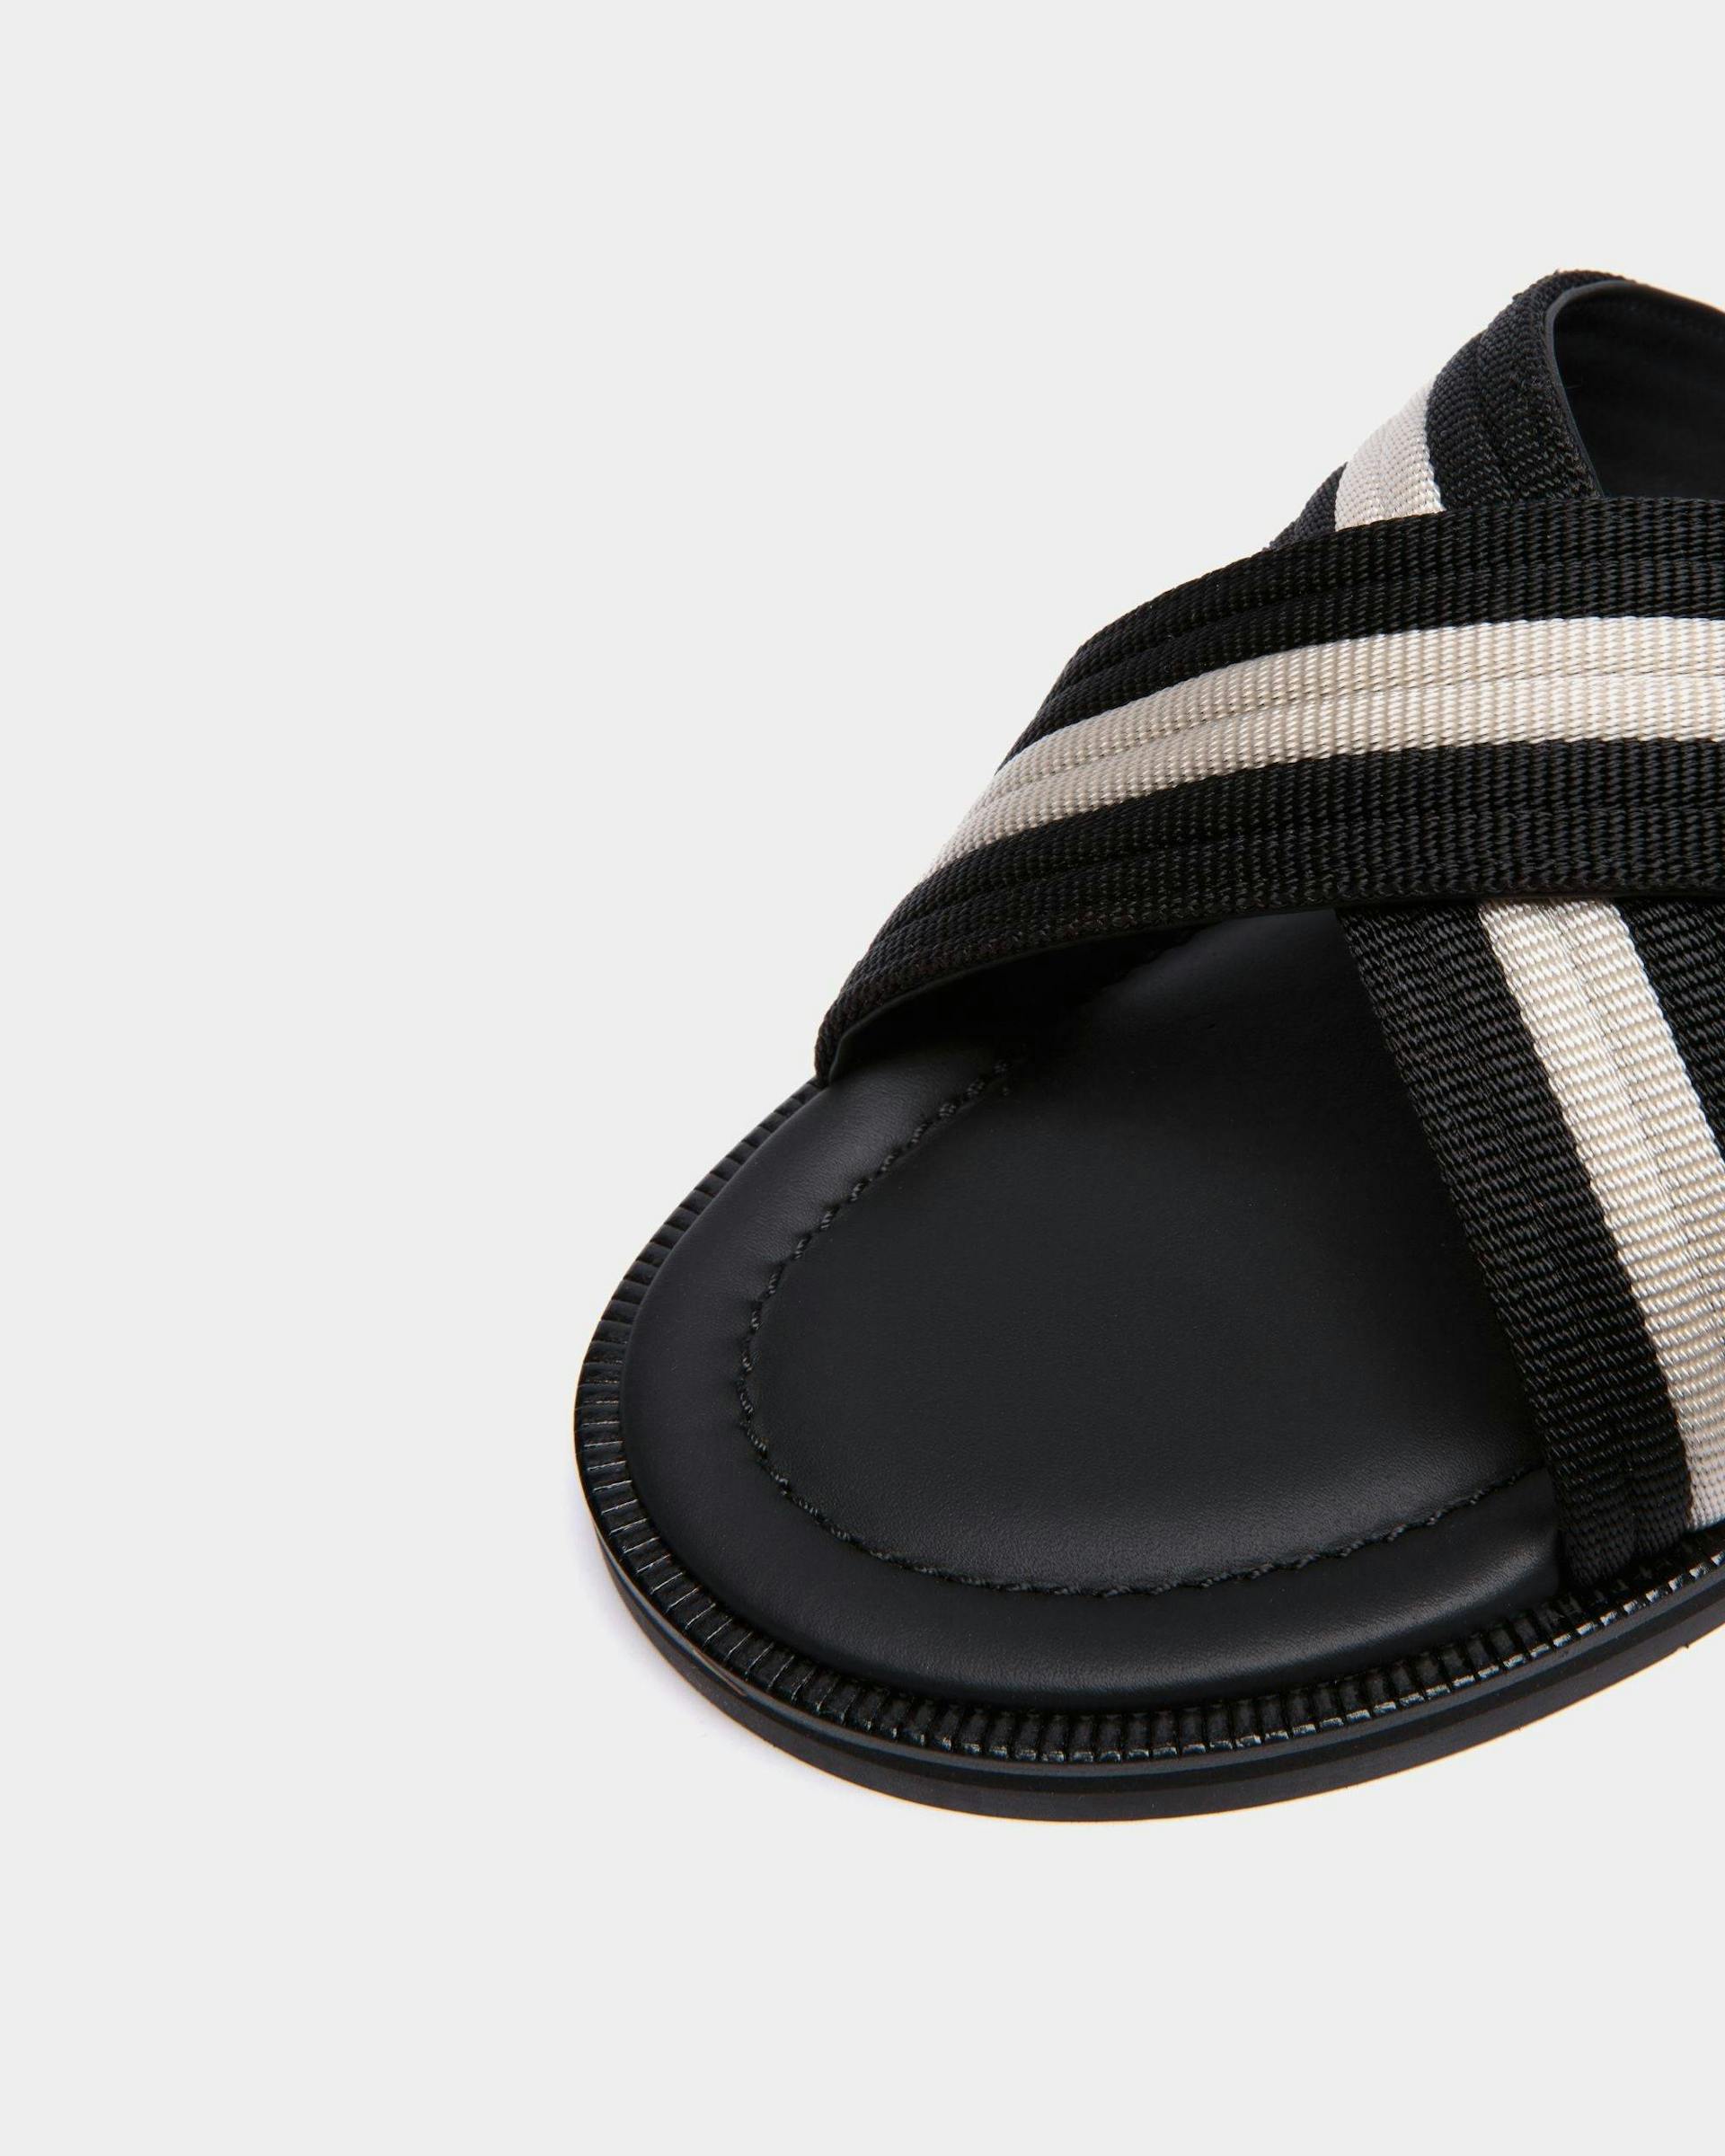 Men's Glide Sandal in Black and White Nylon | Bally | Still Life Detail